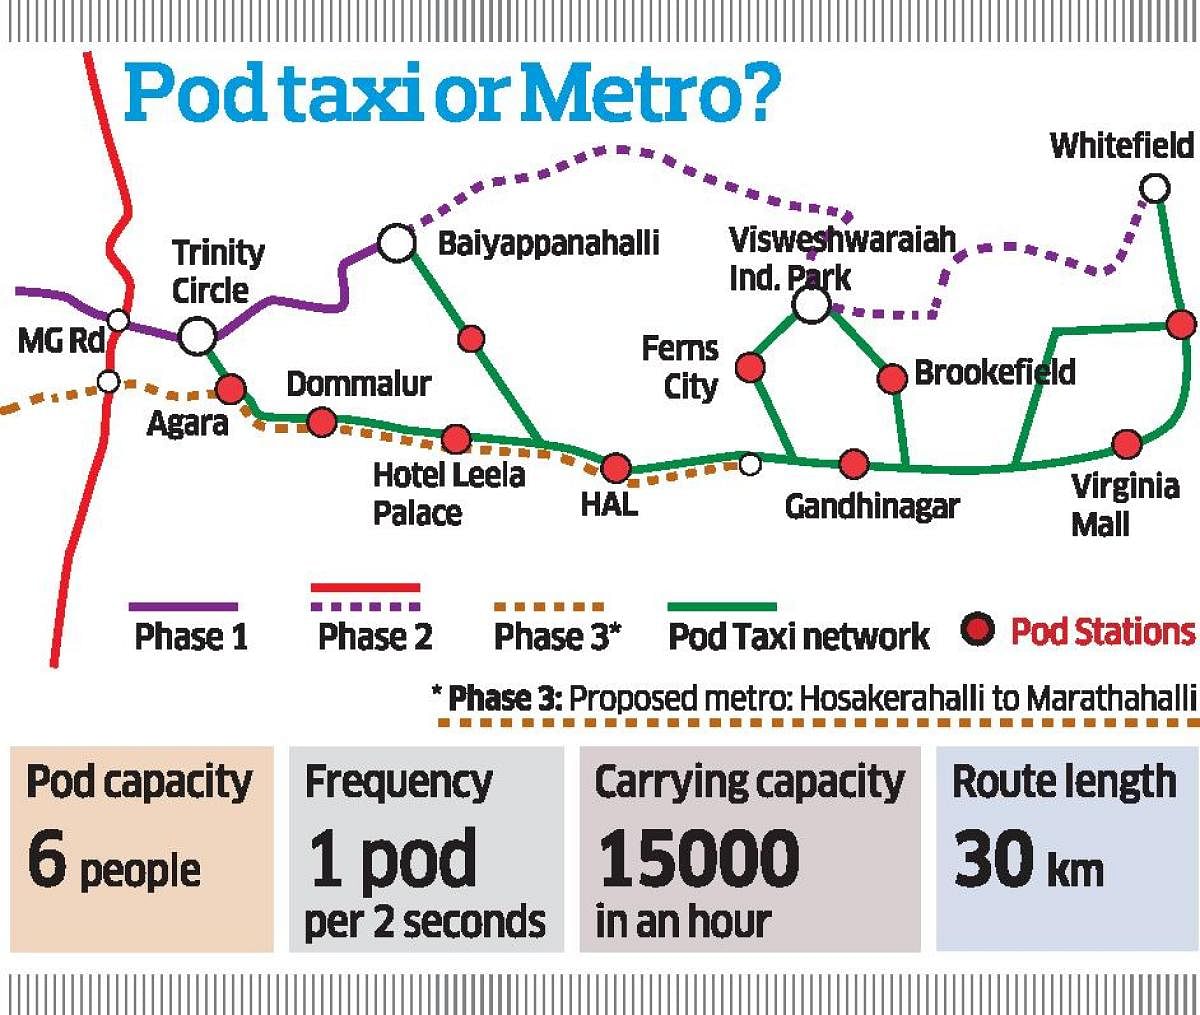 Pod taxi or Metro